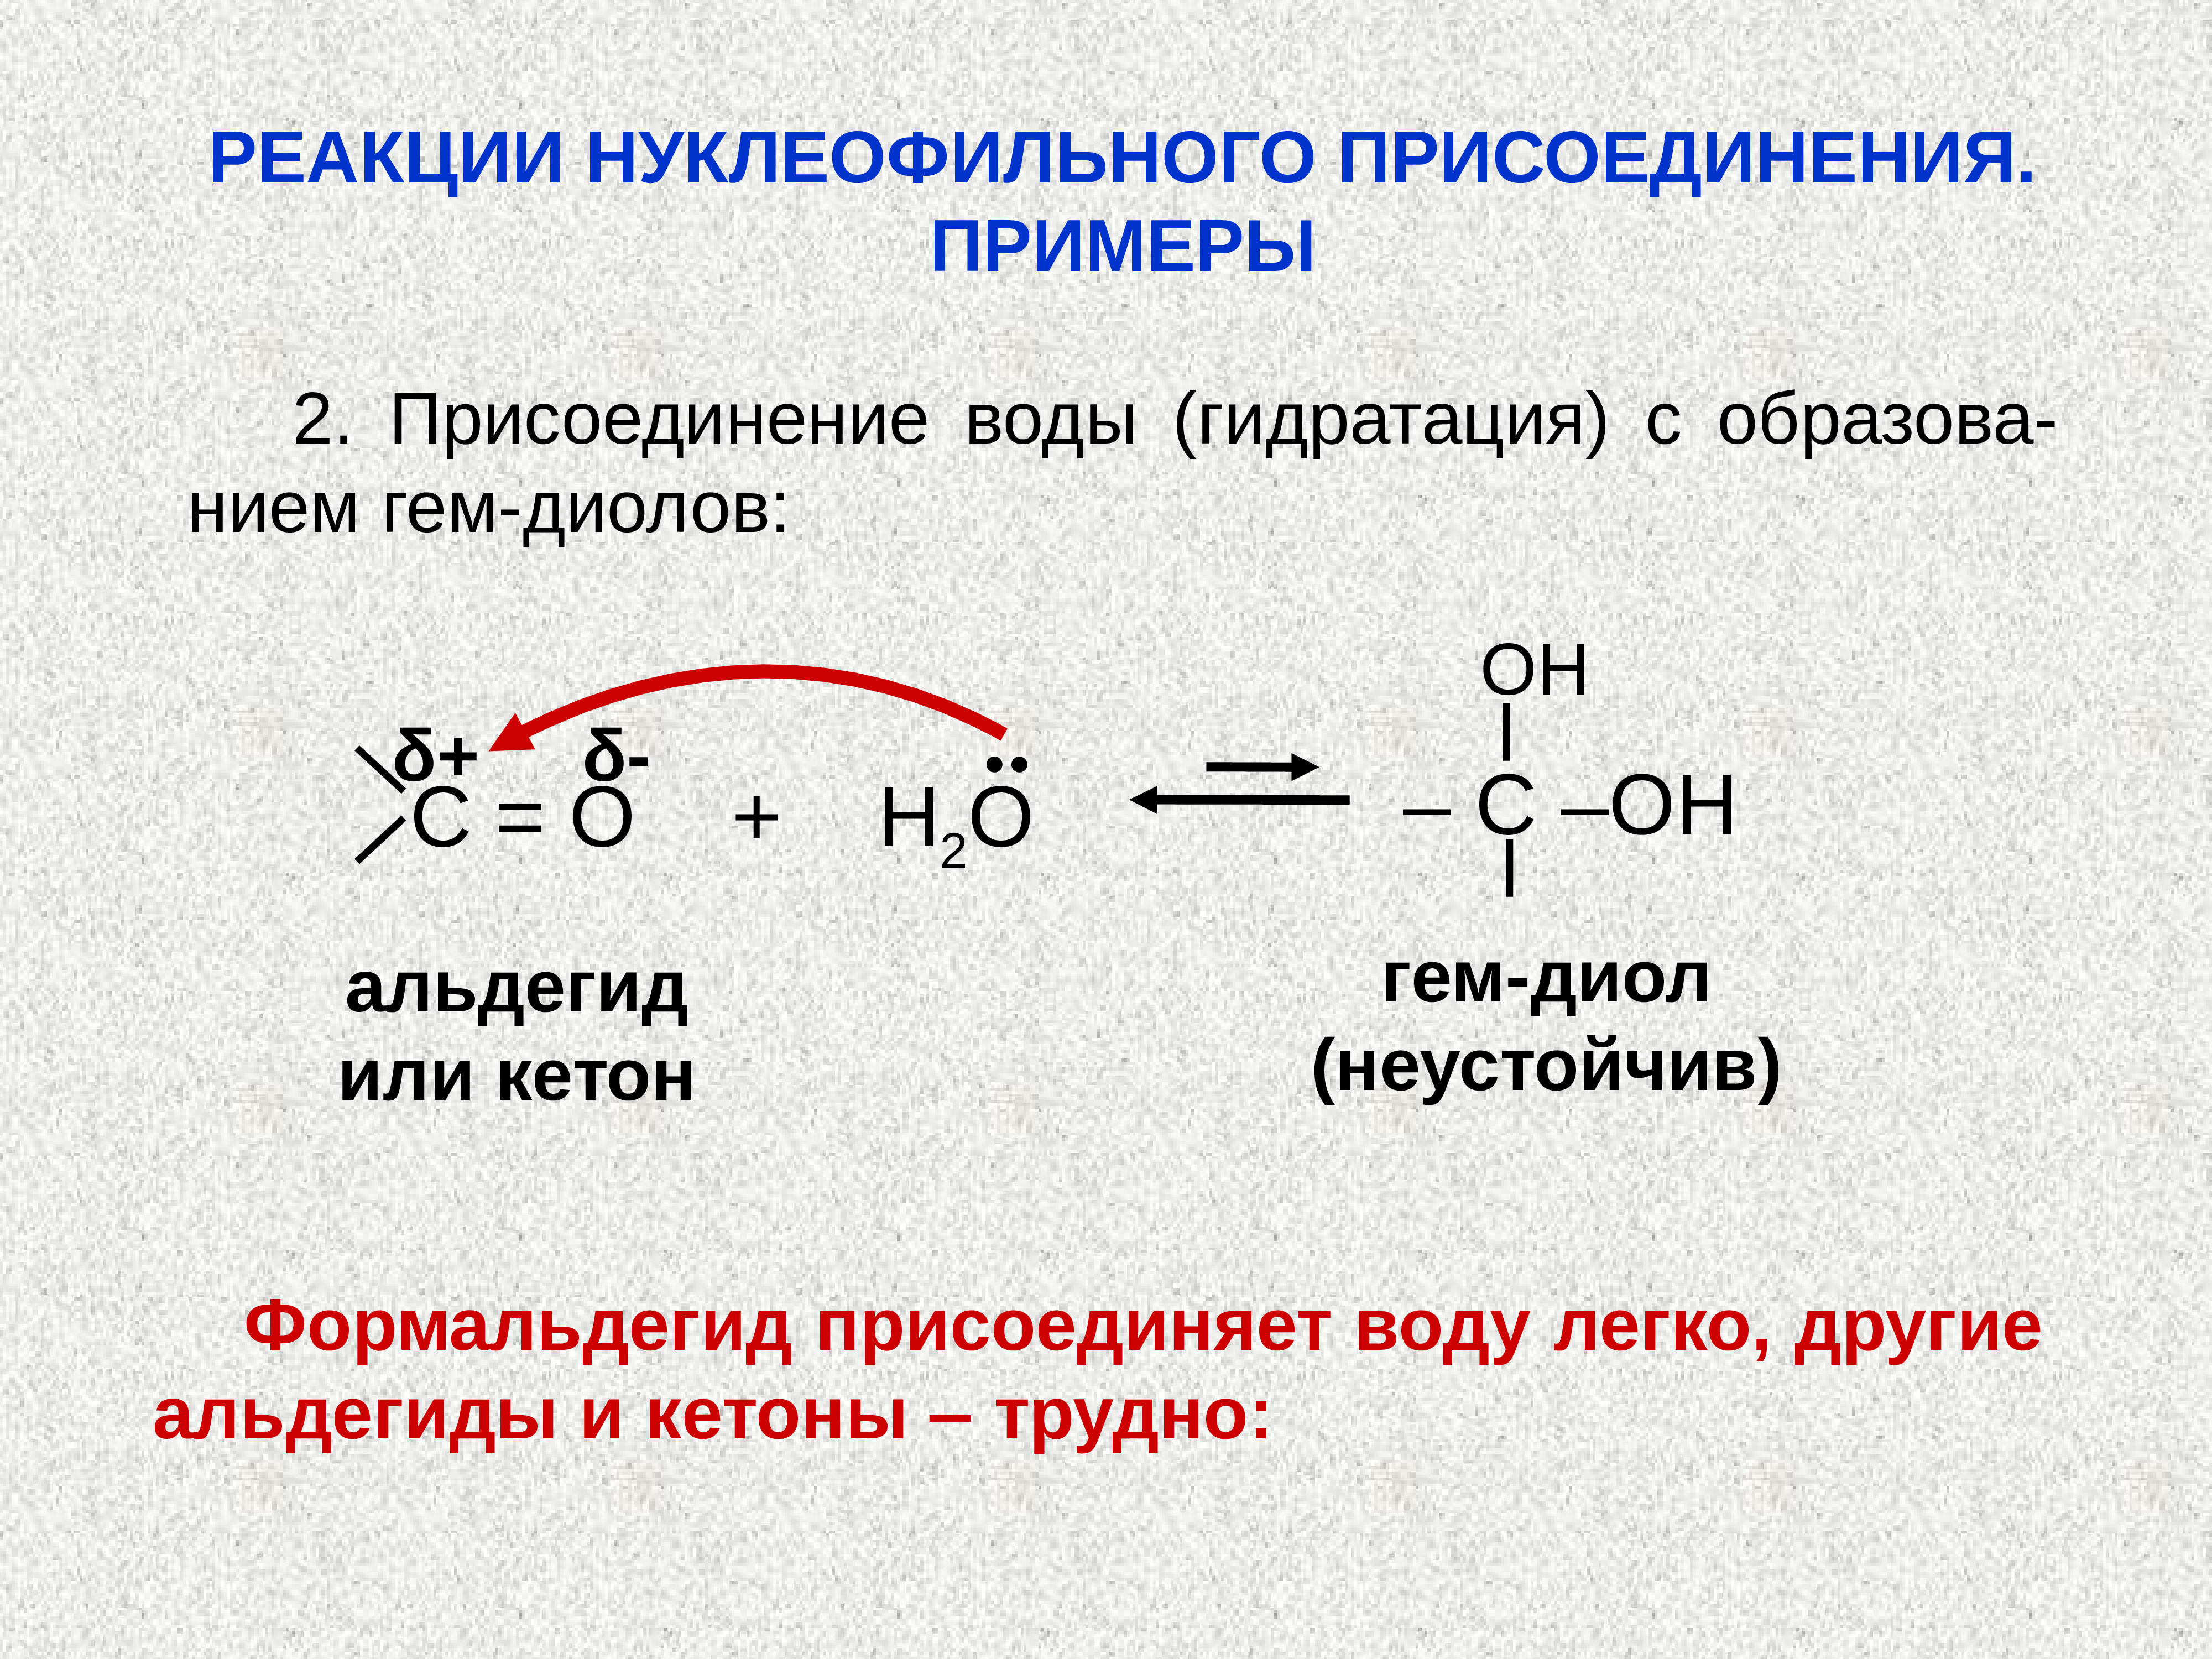 Альдегид с водой реакция. Реакция нуклеофильного присоединения альдегидов. Нуклеофильное присоединение кетонов. Реакции нуклеофильного присоединения альдегидов и кетонов. Нуклеофильное присоединение альдегидов и кетонов.